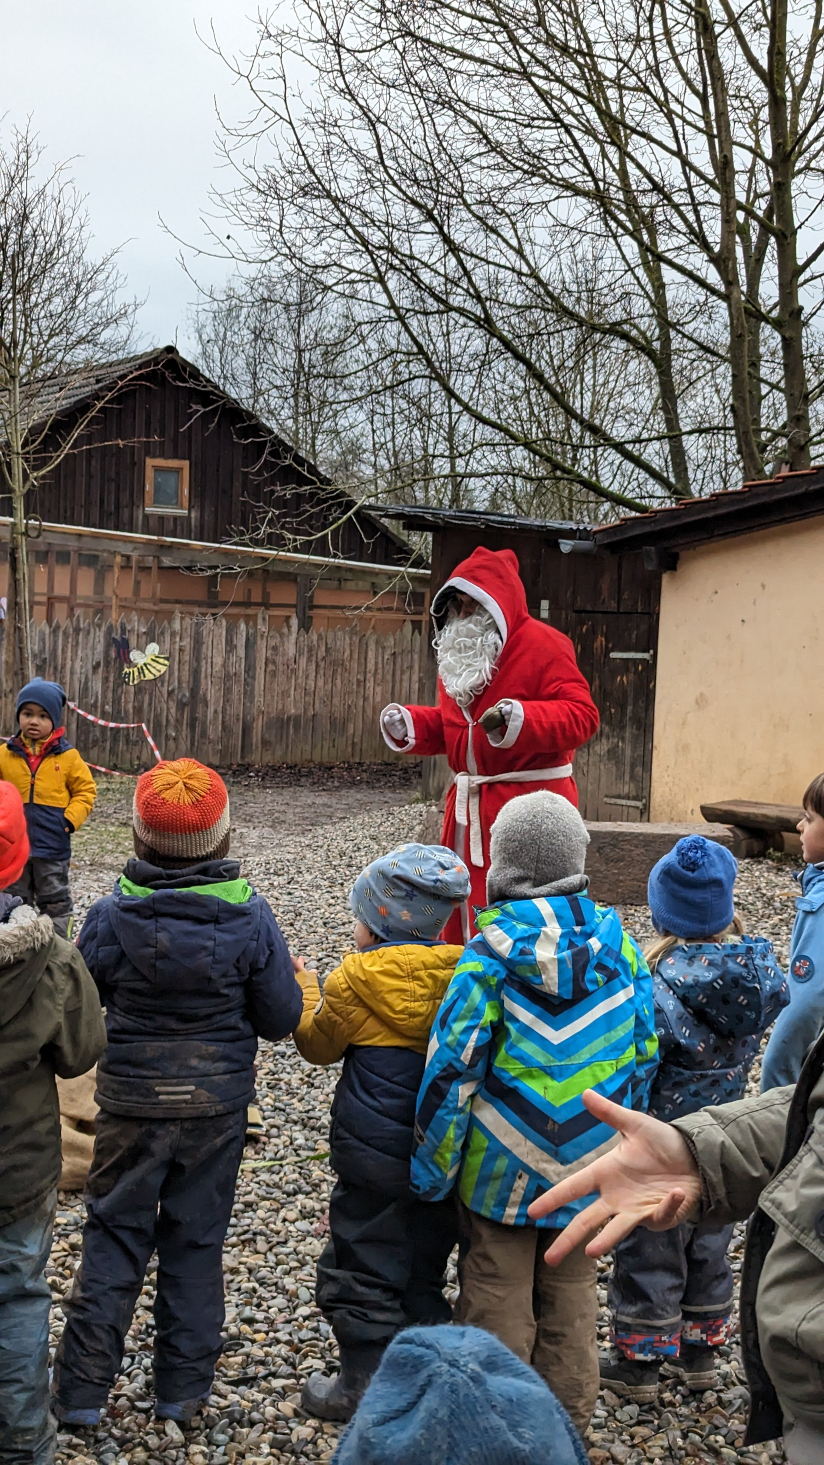 Kinder in Winterkleidung schauen zu einem als Nikolaus verkleideten Erwachsenen auf, der in einem offenen Hof vor einem Holzhaus steht.